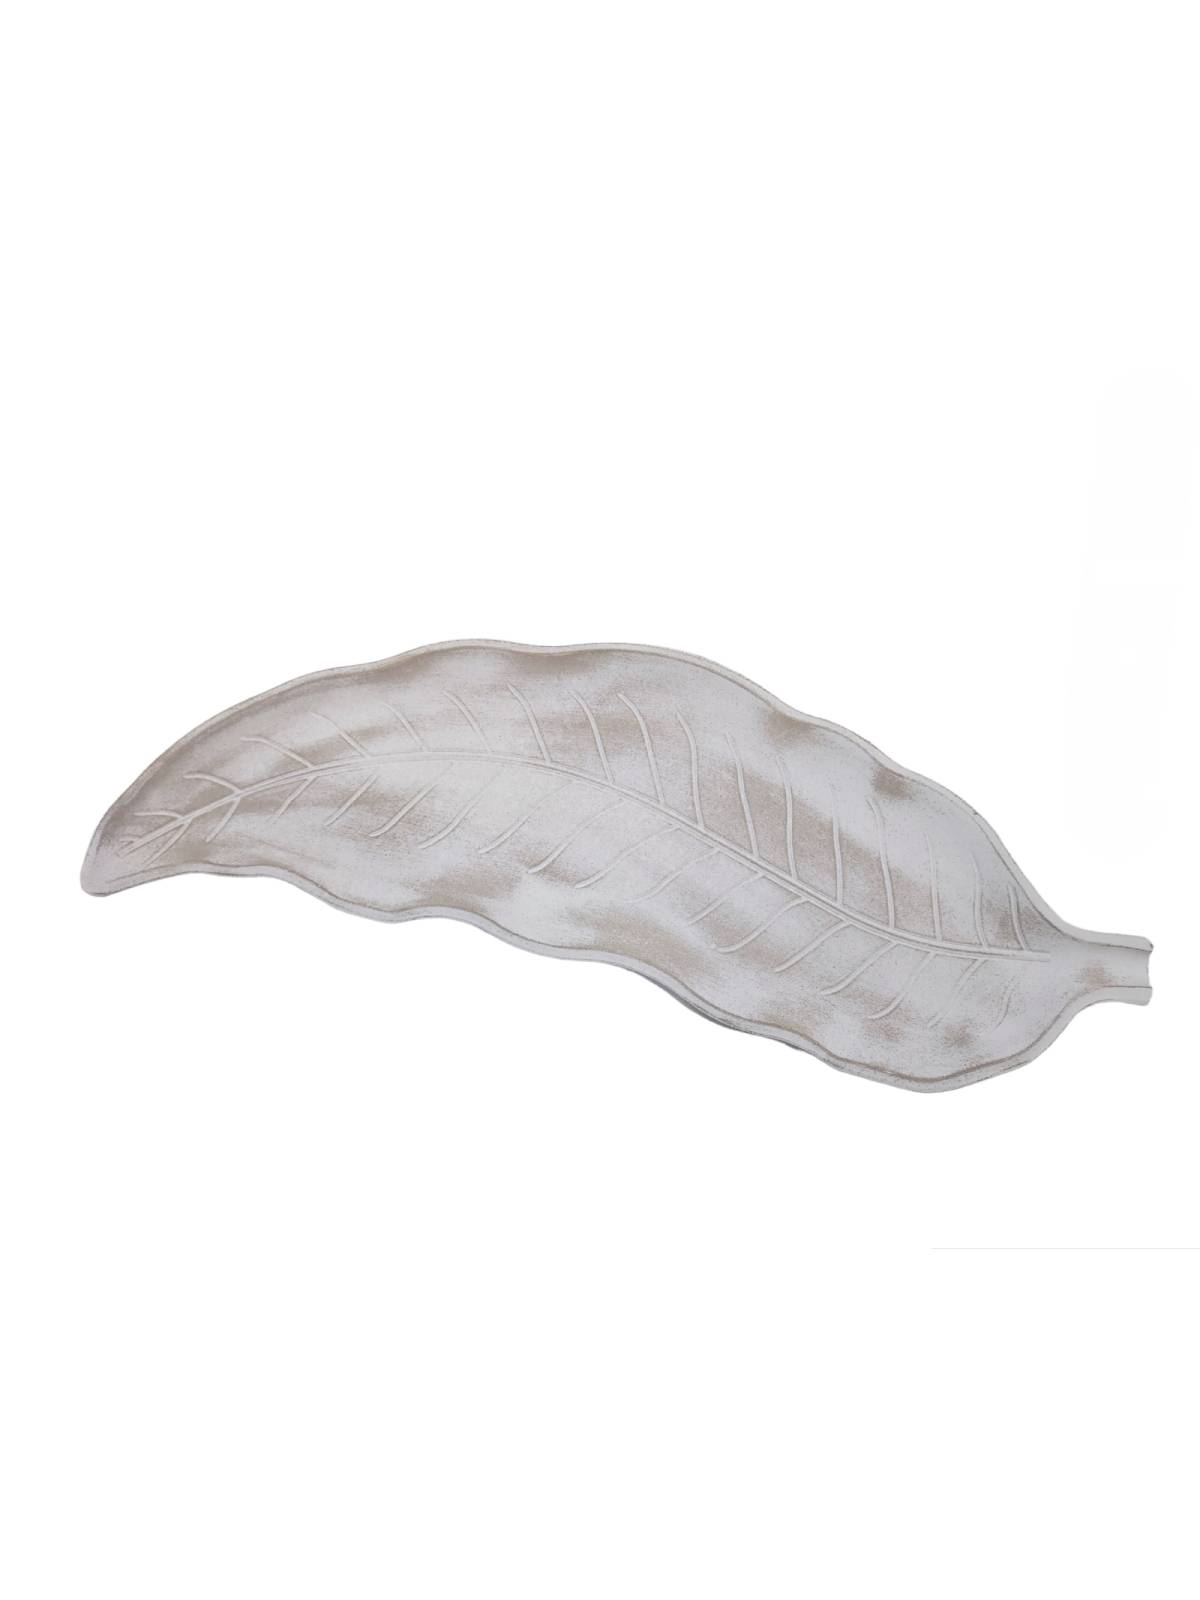 Πιατέλλα διακοσμητική φύλλο λευκή αντικέ